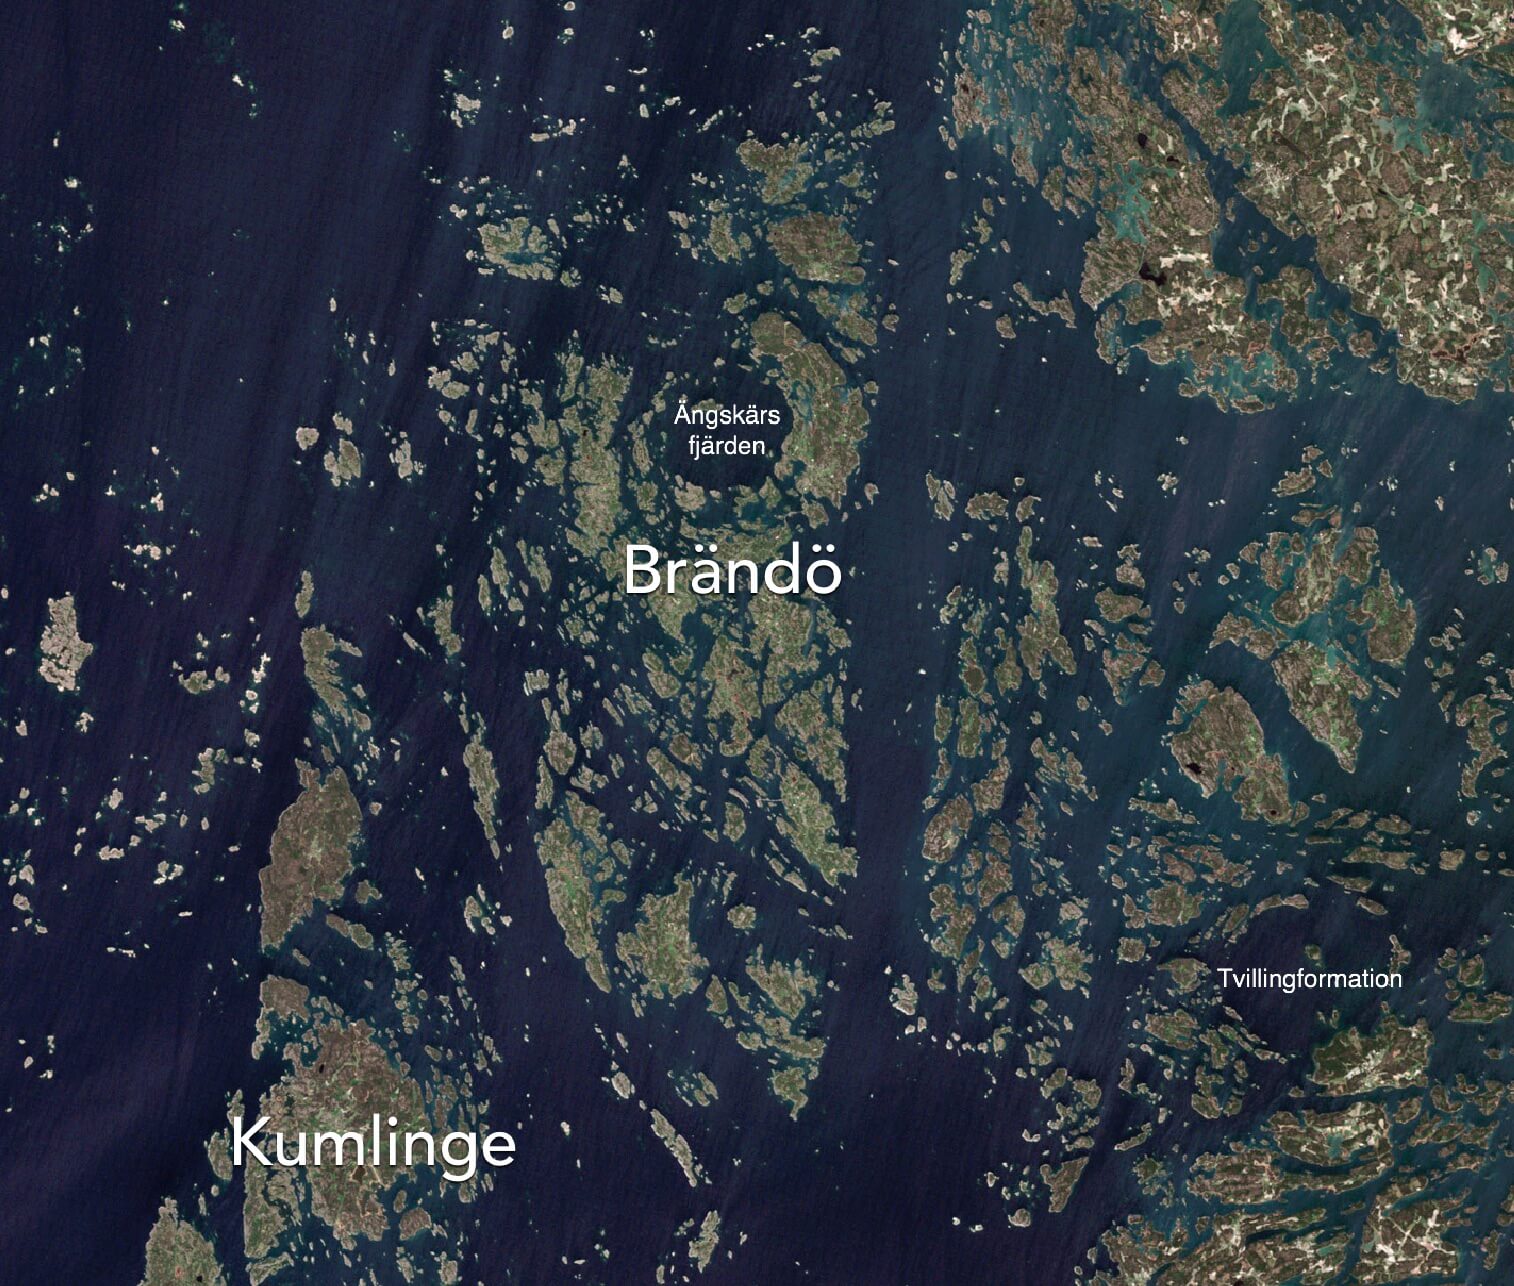 Map of Ängskärs fjärden in Brändö